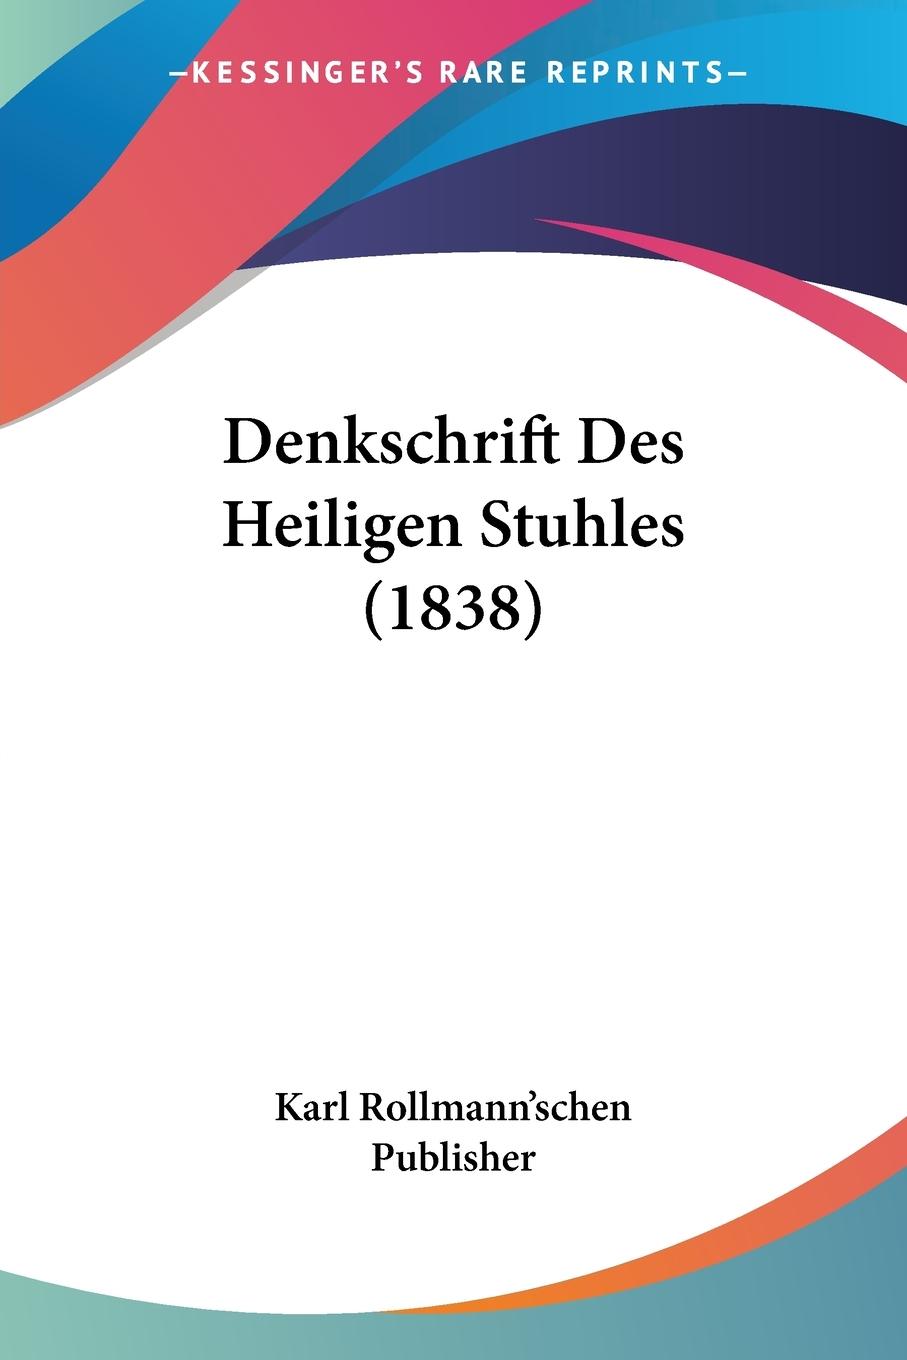 Denkschrift Des Heiligen Stuhles (1838) - Karl Rollmann schen Publisher